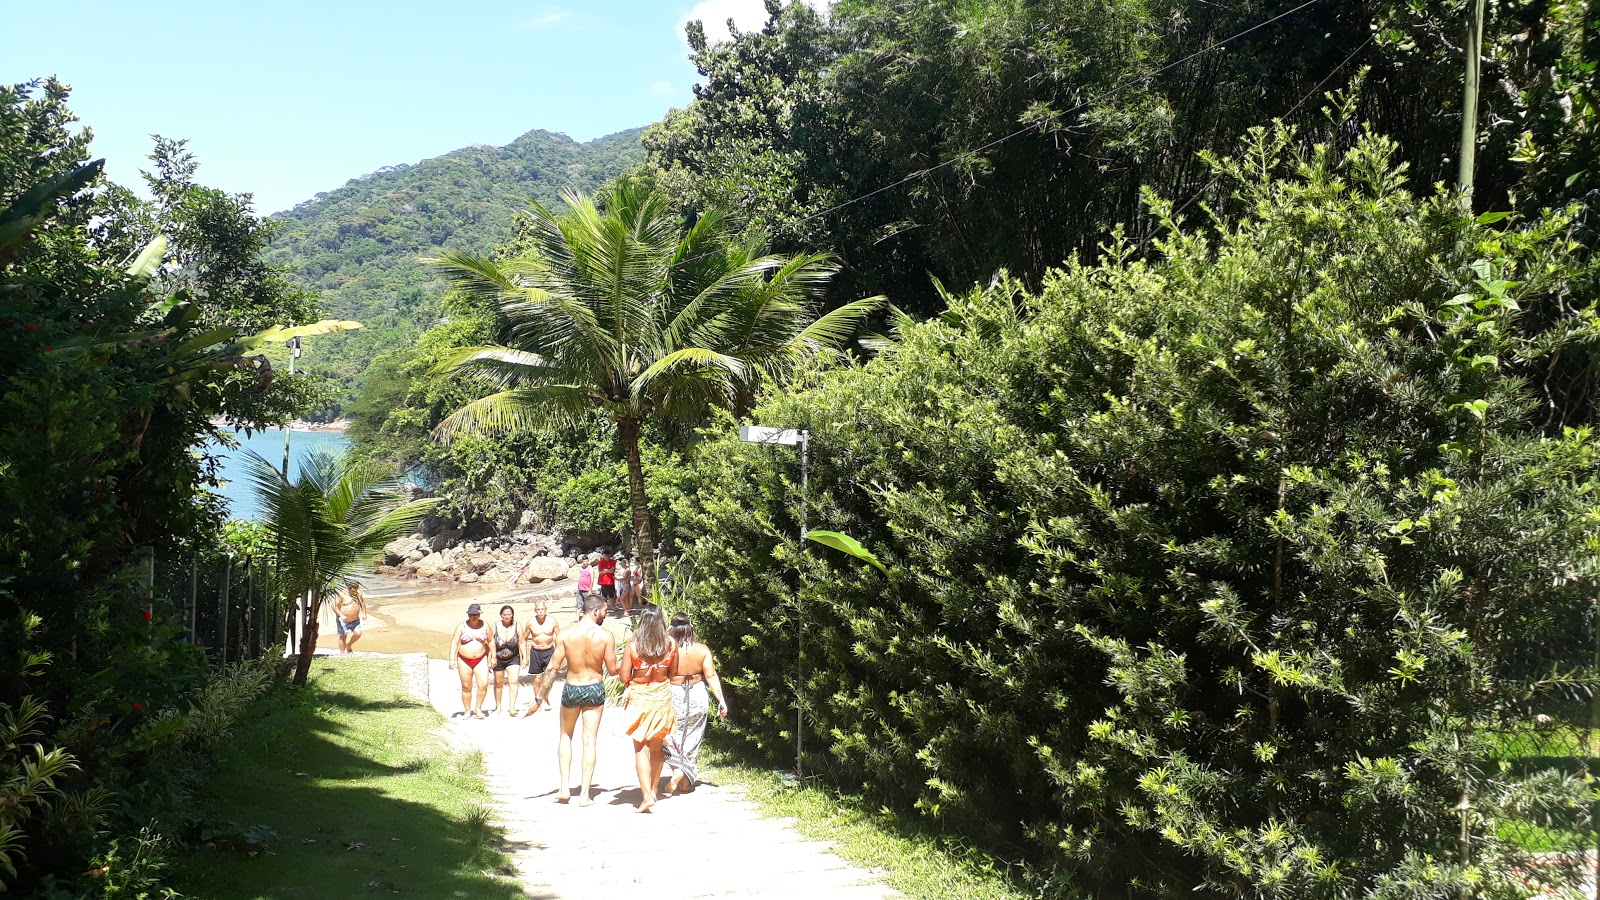 Praia da Santa Rita'in fotoğrafı - rahatlamayı sevenler arasında popüler bir yer